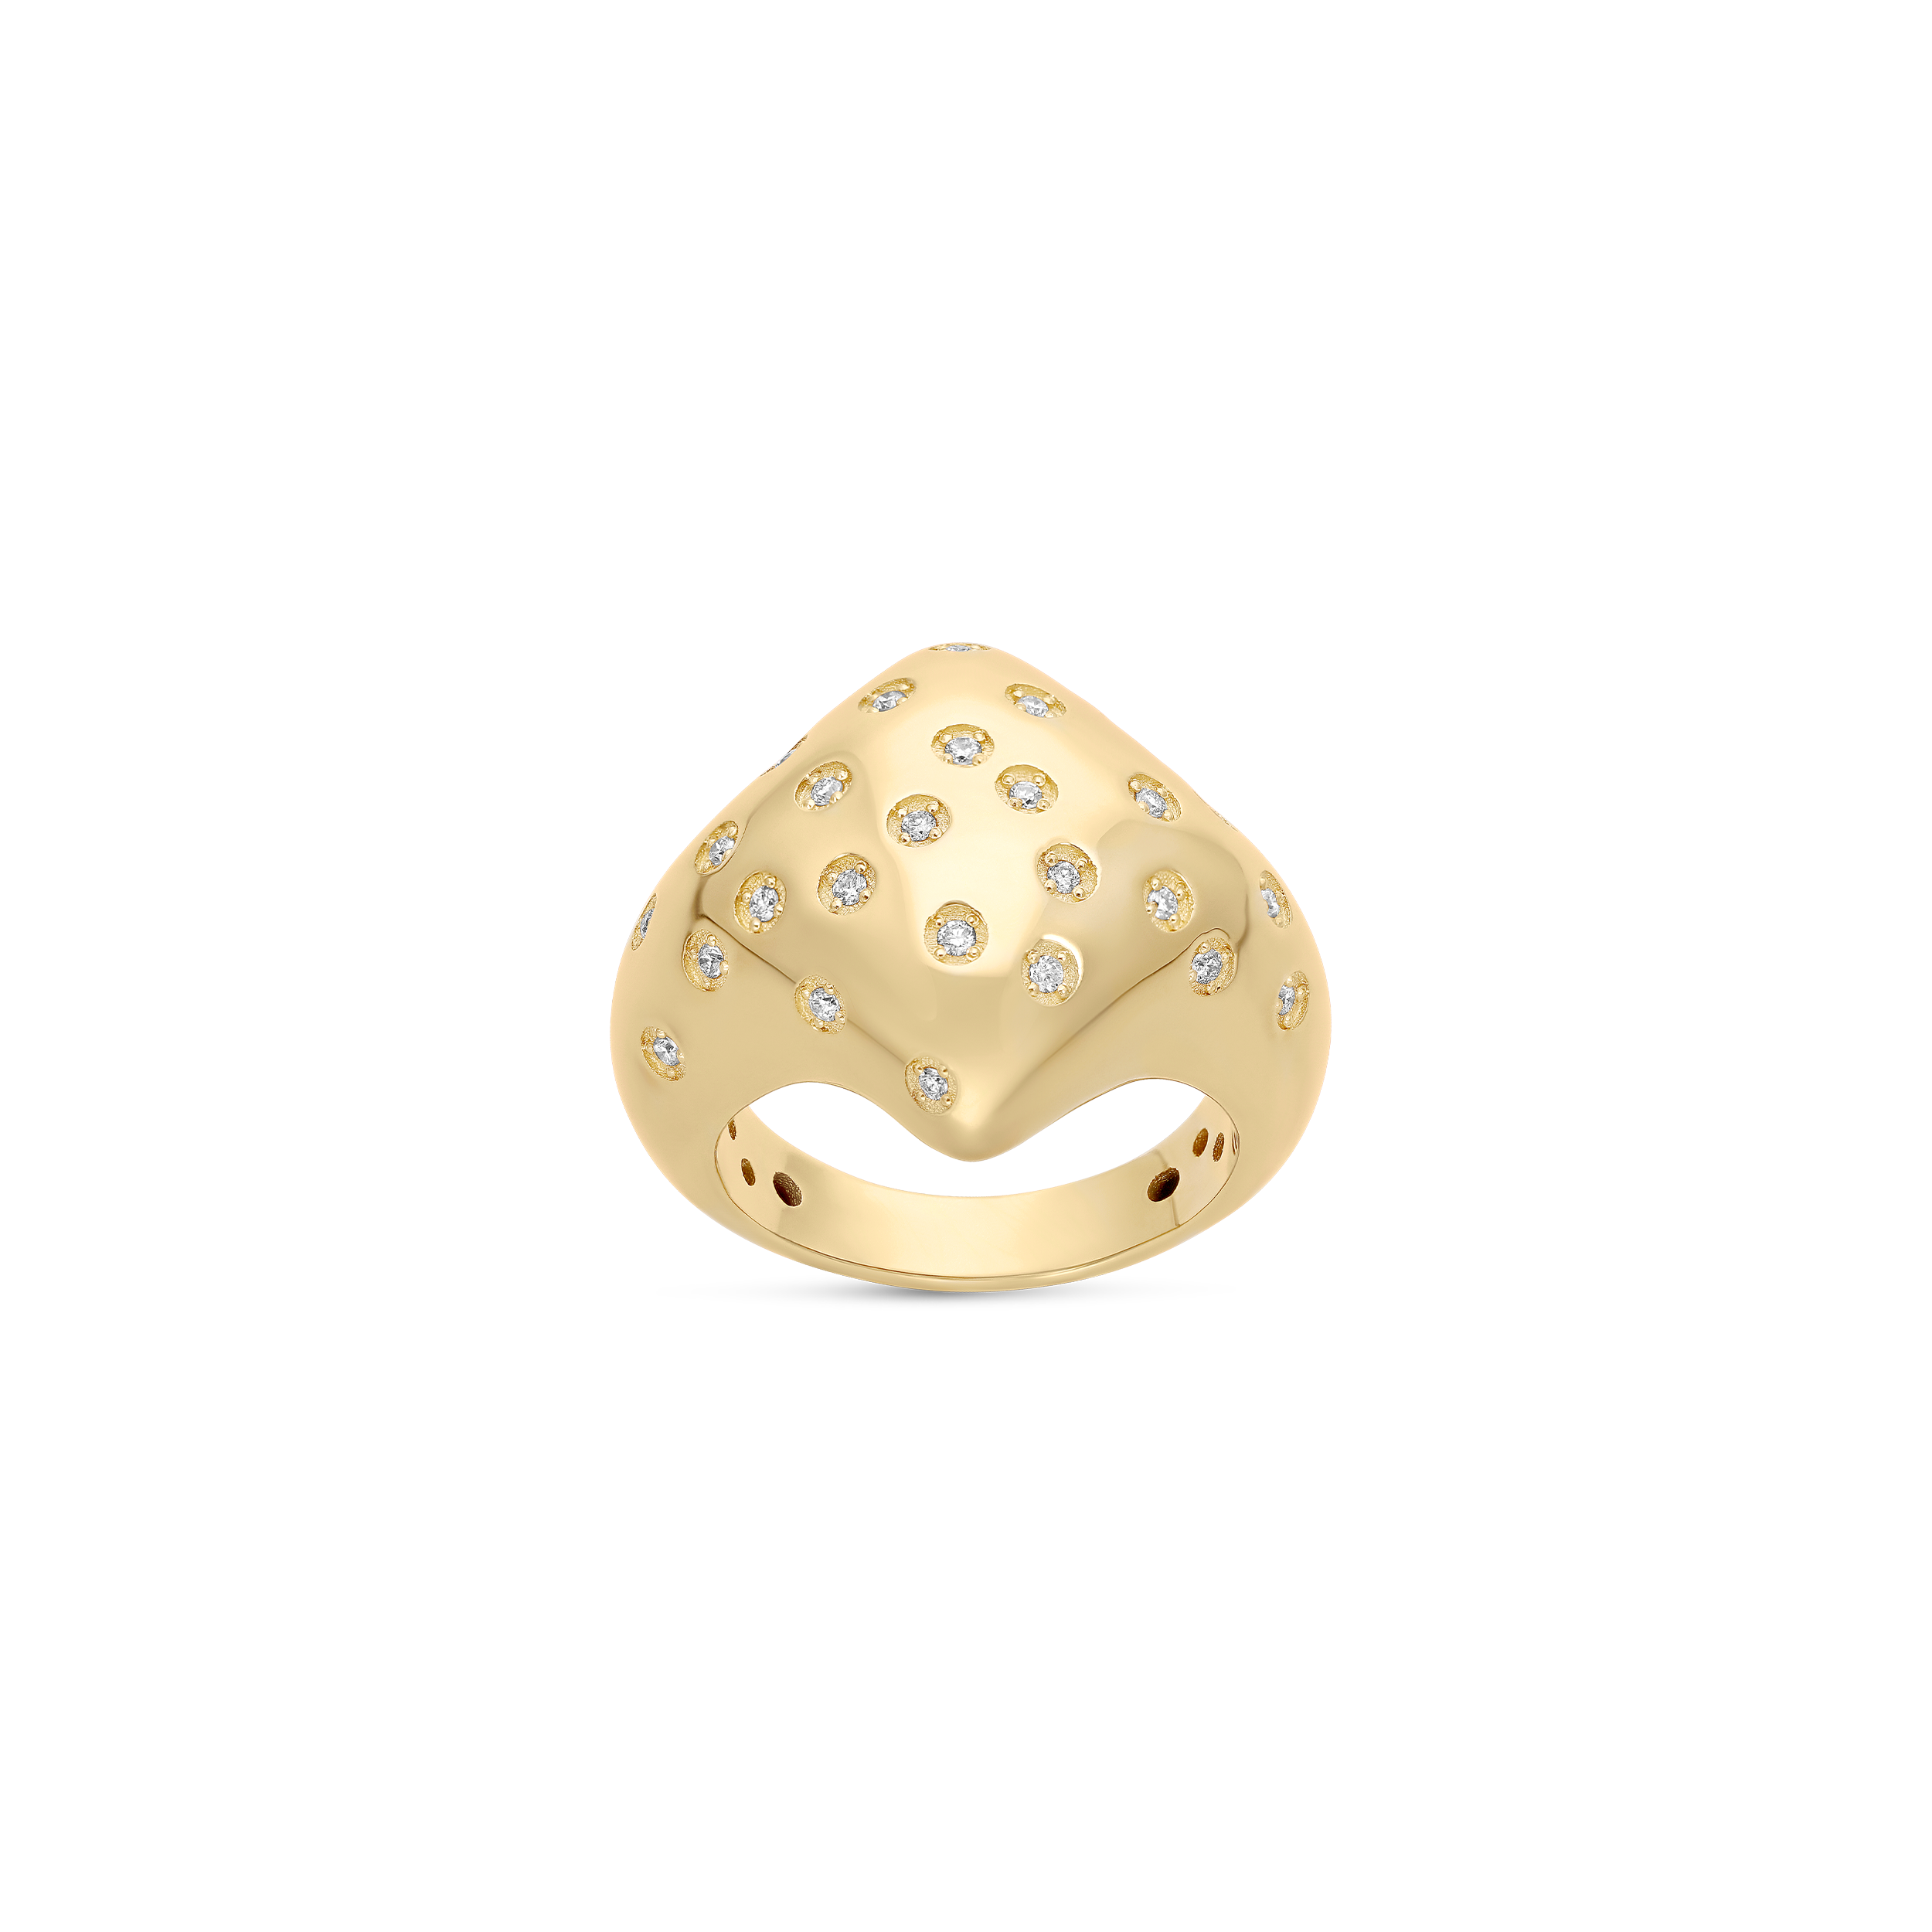 Apollonia Yellow Gold Diamond-Shaped Ring with White Diamonds